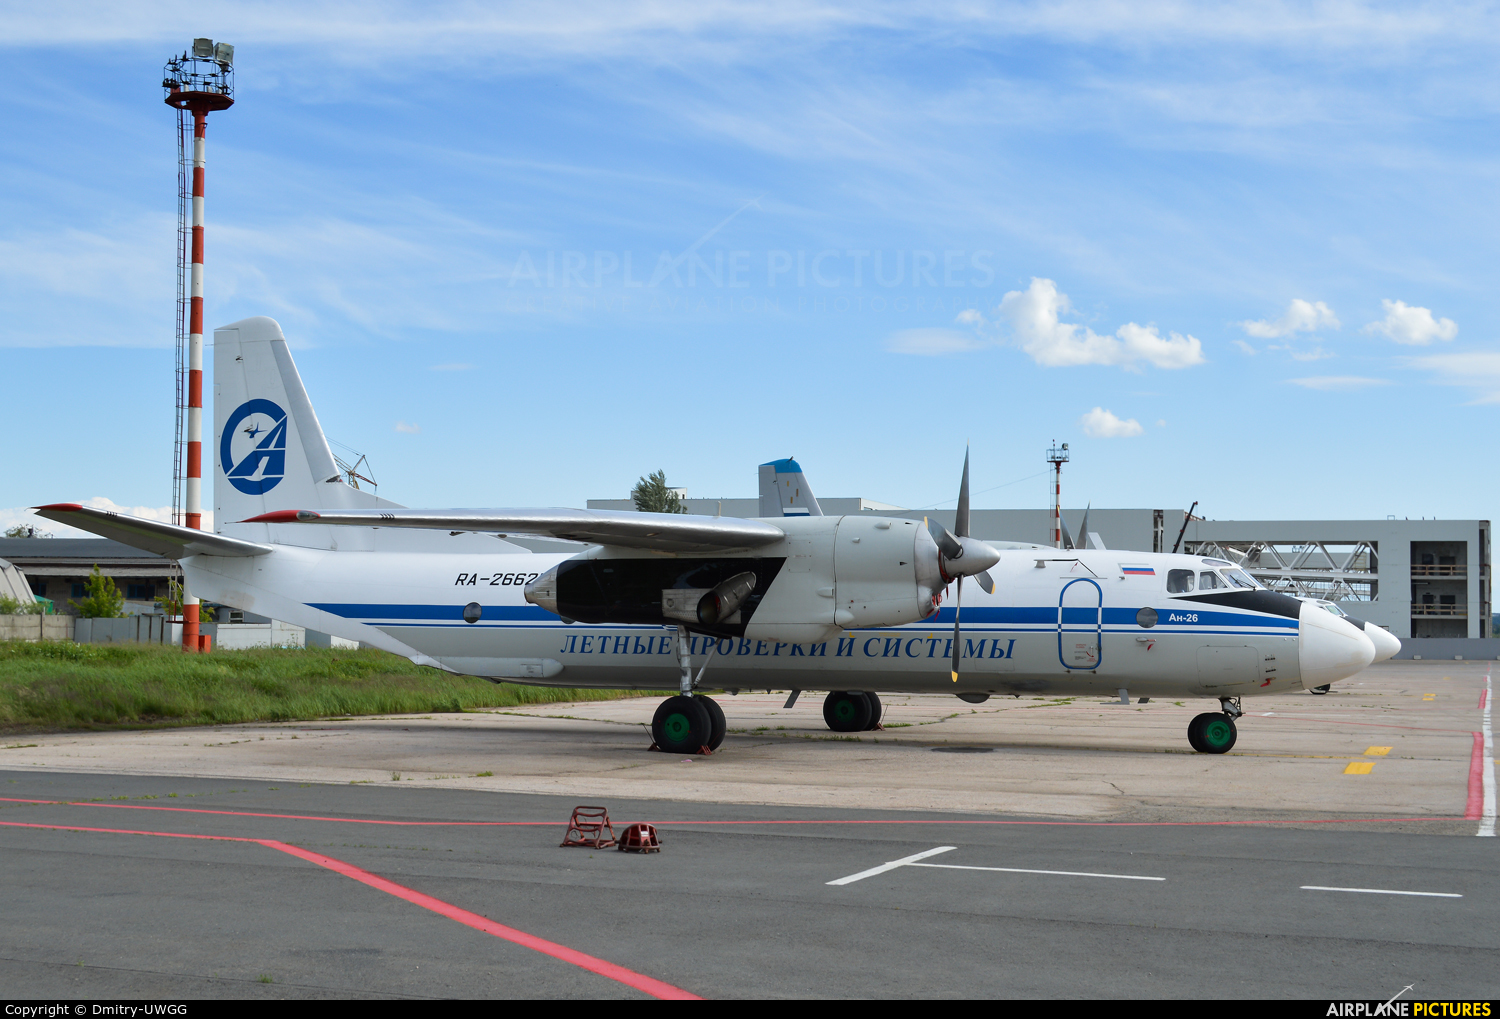 State ATM Corporation RA-26625 aircraft at Nizhniy Novgorod